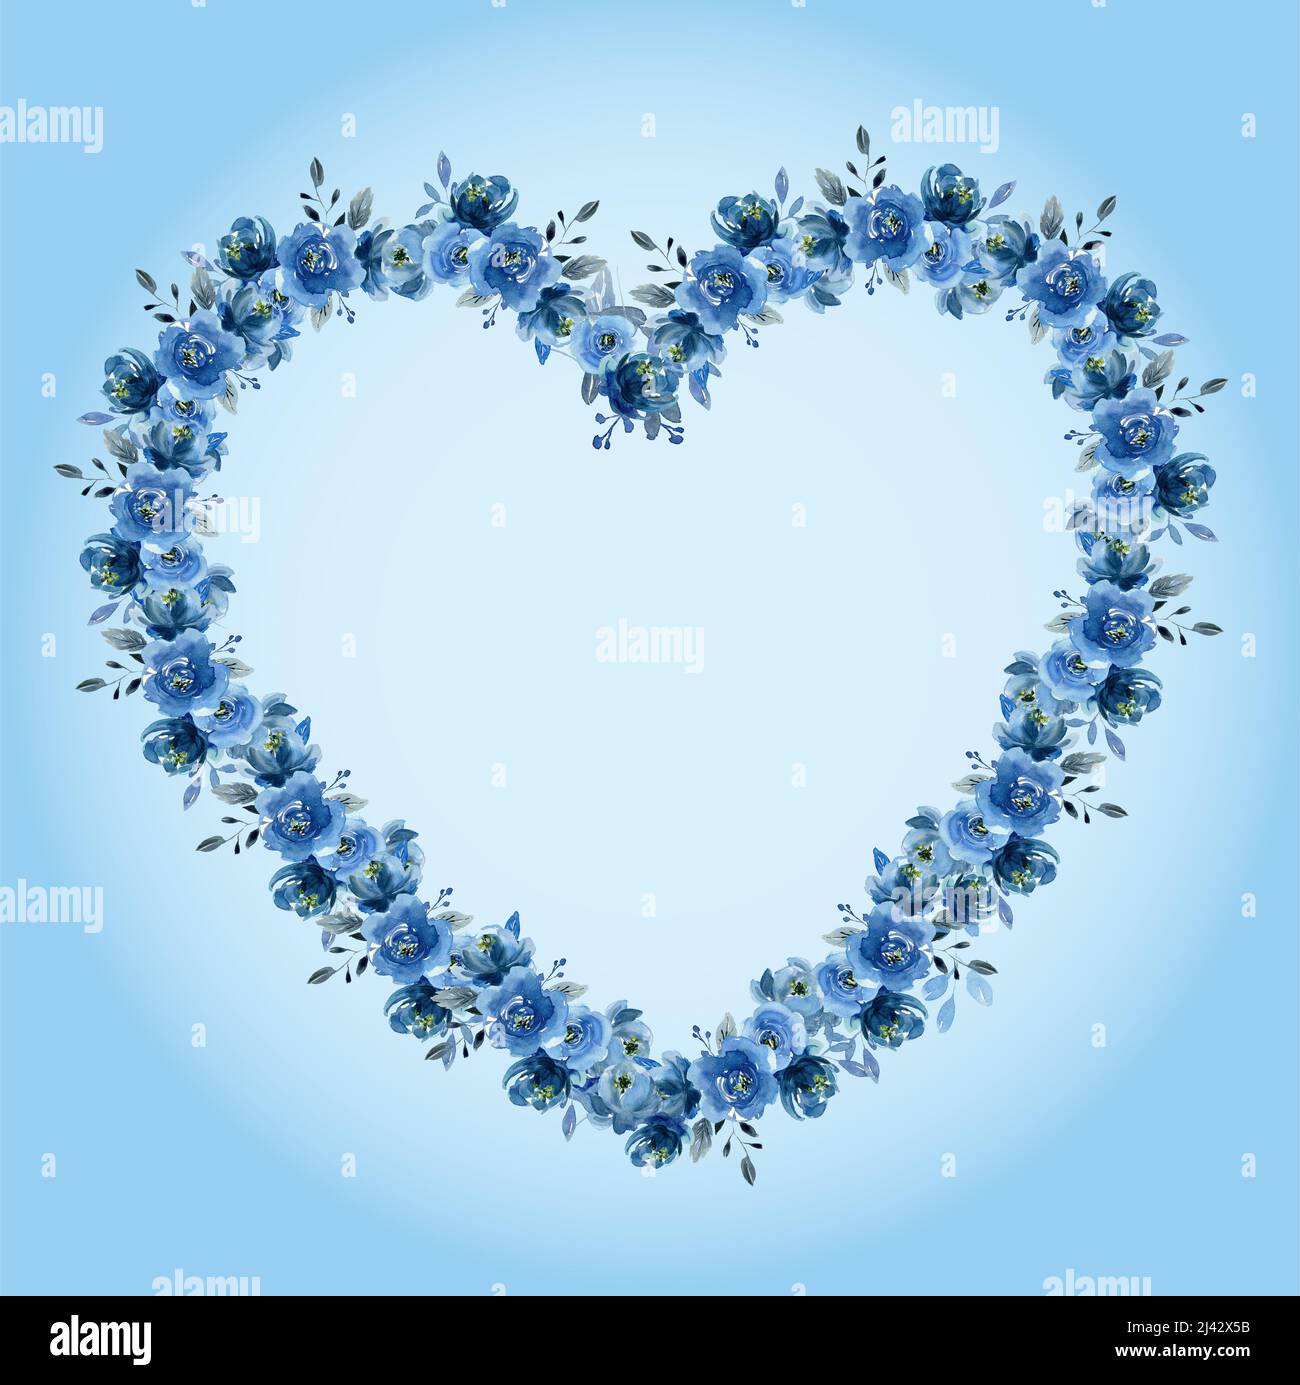 Bleu coeurs aquarelle en forme de coeur isolé sur fond bleu dégradé Banque D'Images